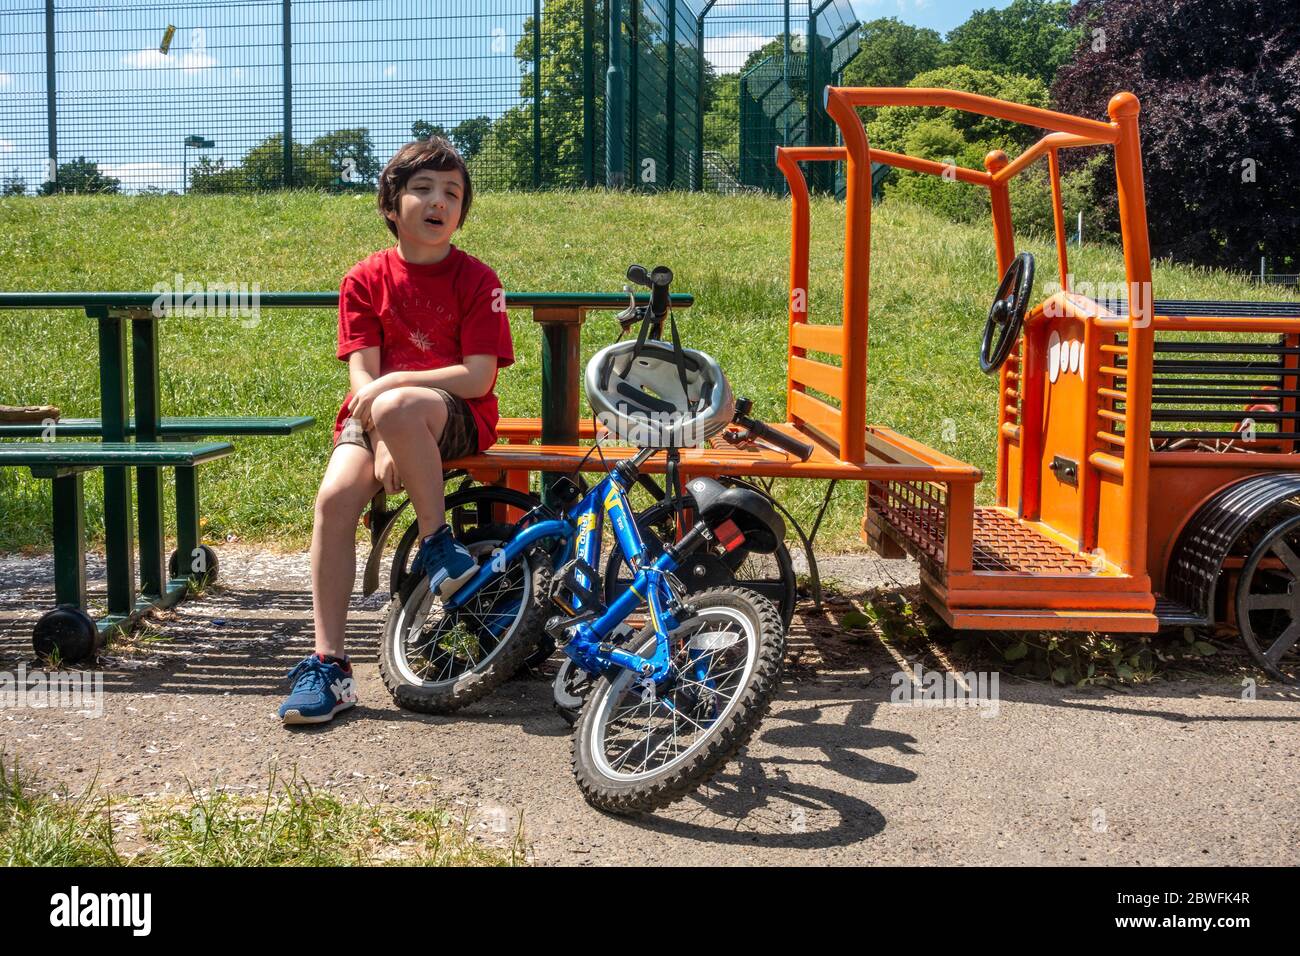 Un jeune garçon est assis sur un banc dans un parc pour se reposer. Il a son vélo avec lui. C'est une chaude journée d'été. Banque D'Images